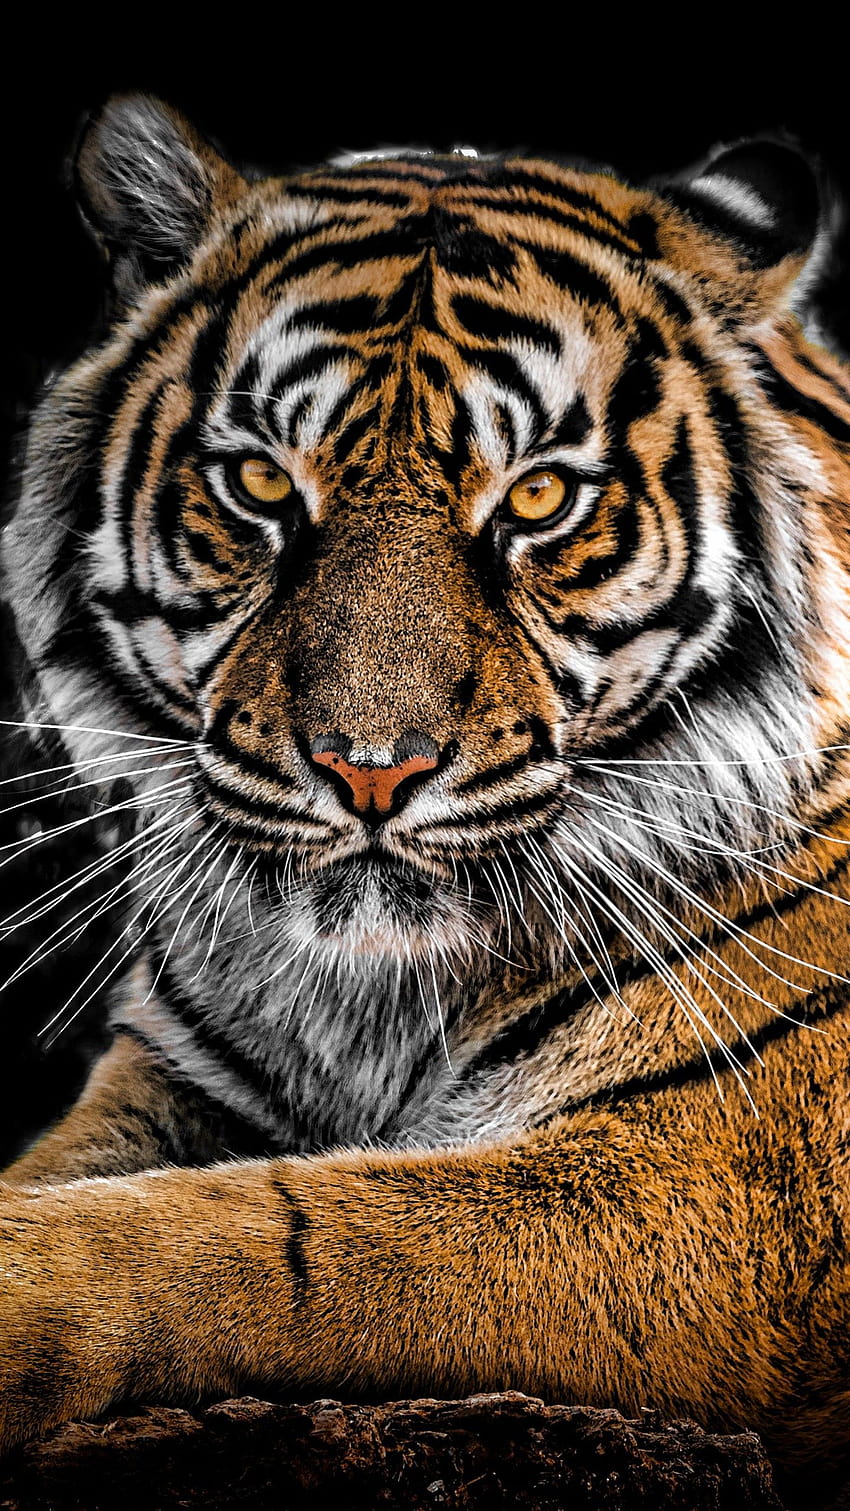 Tiger Sunset Fantasy - Free photo on Pixabay - Pixabay